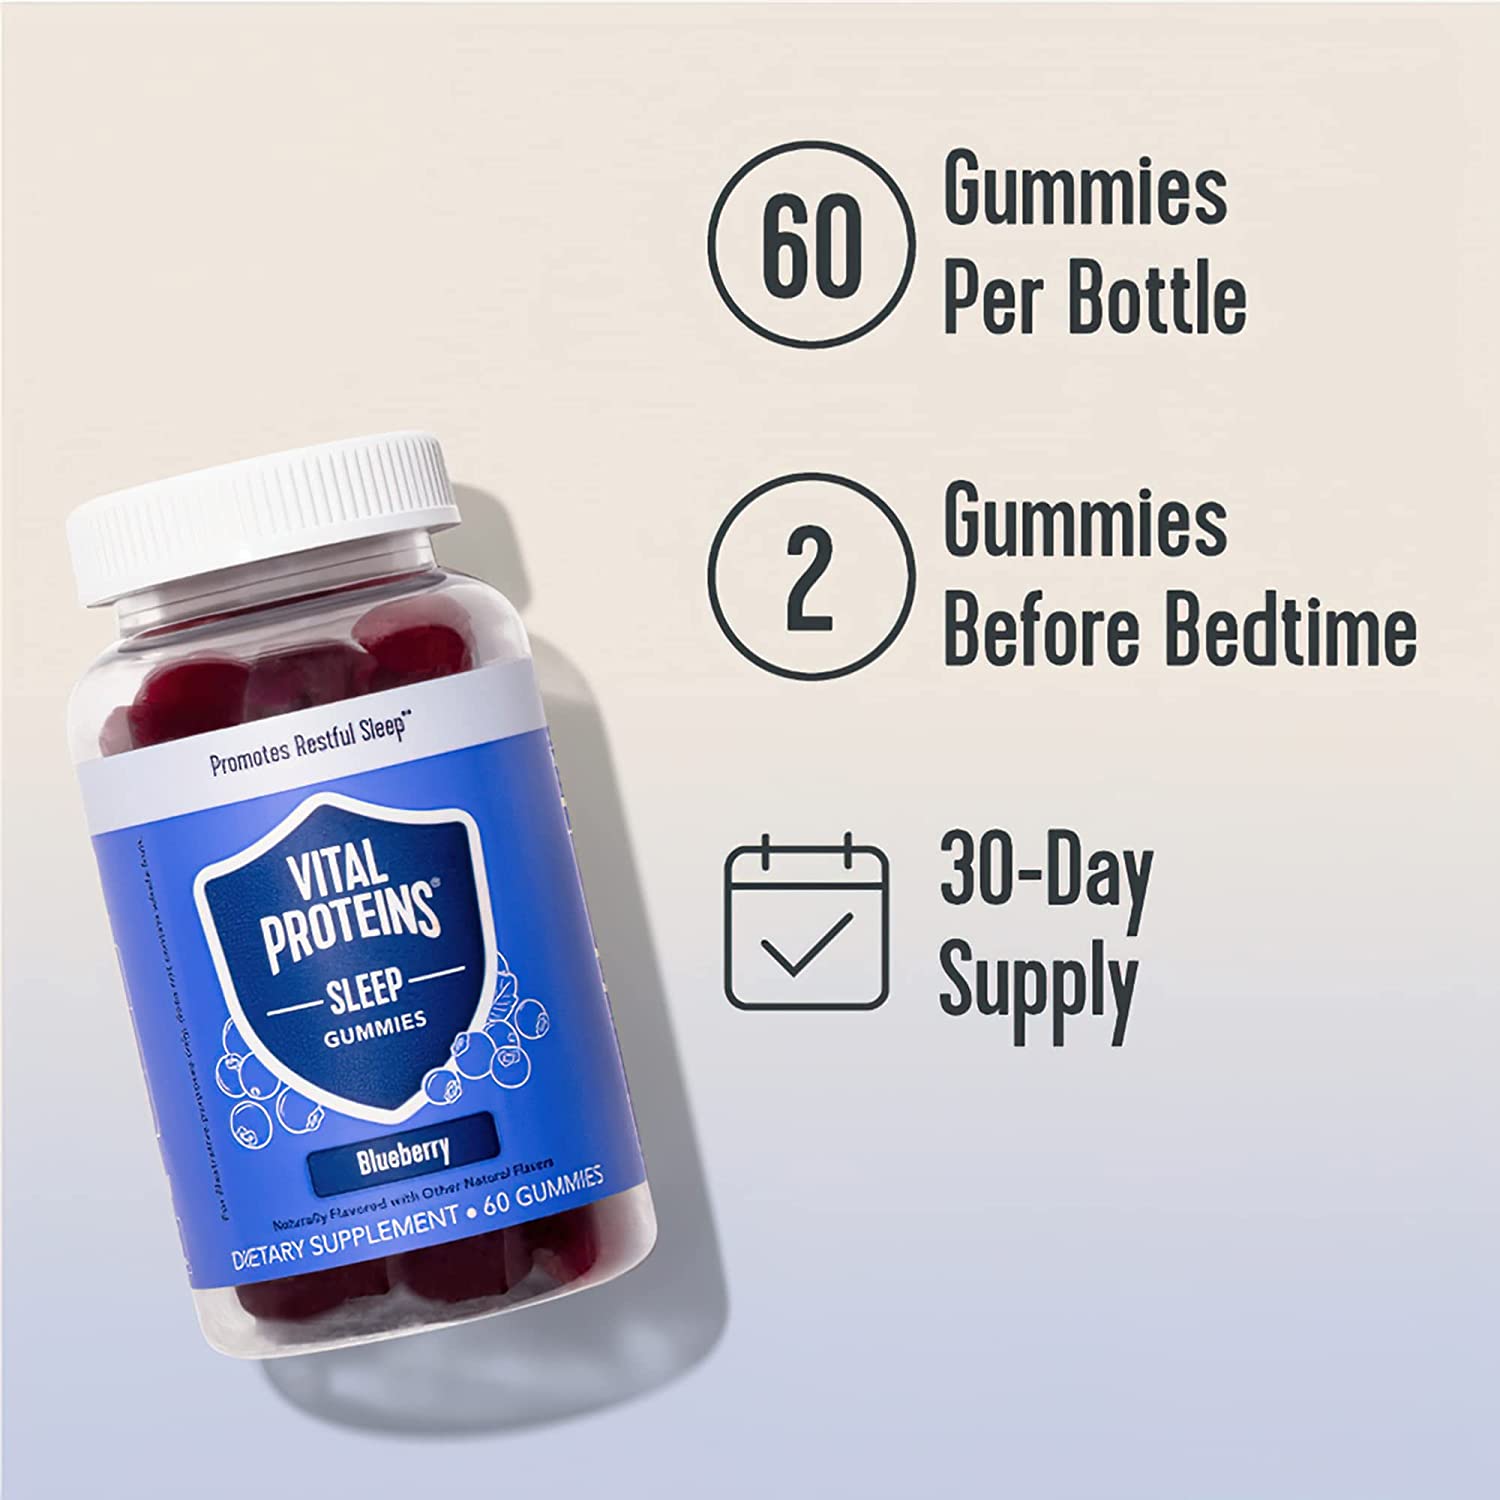 Vital Proteins Sleep Gummies $5.16 @Amazon +Fee Shipping